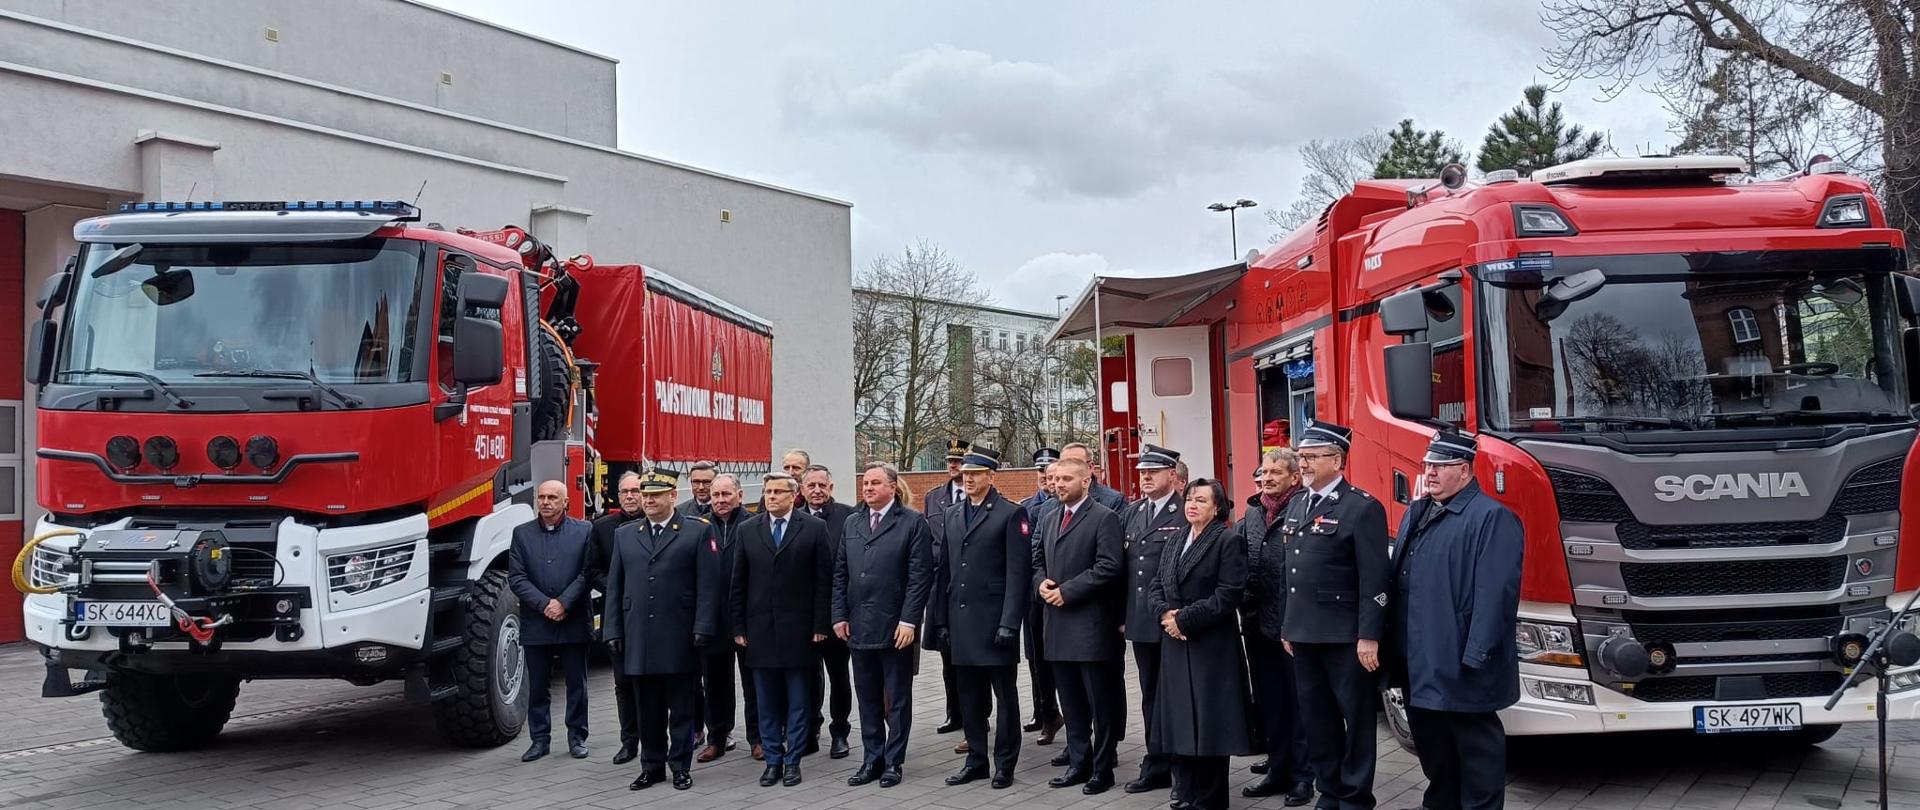 Narada podsumowująca działalność Komendy Miejskiej Państwowej Straży Pożarnej w Gliwicach